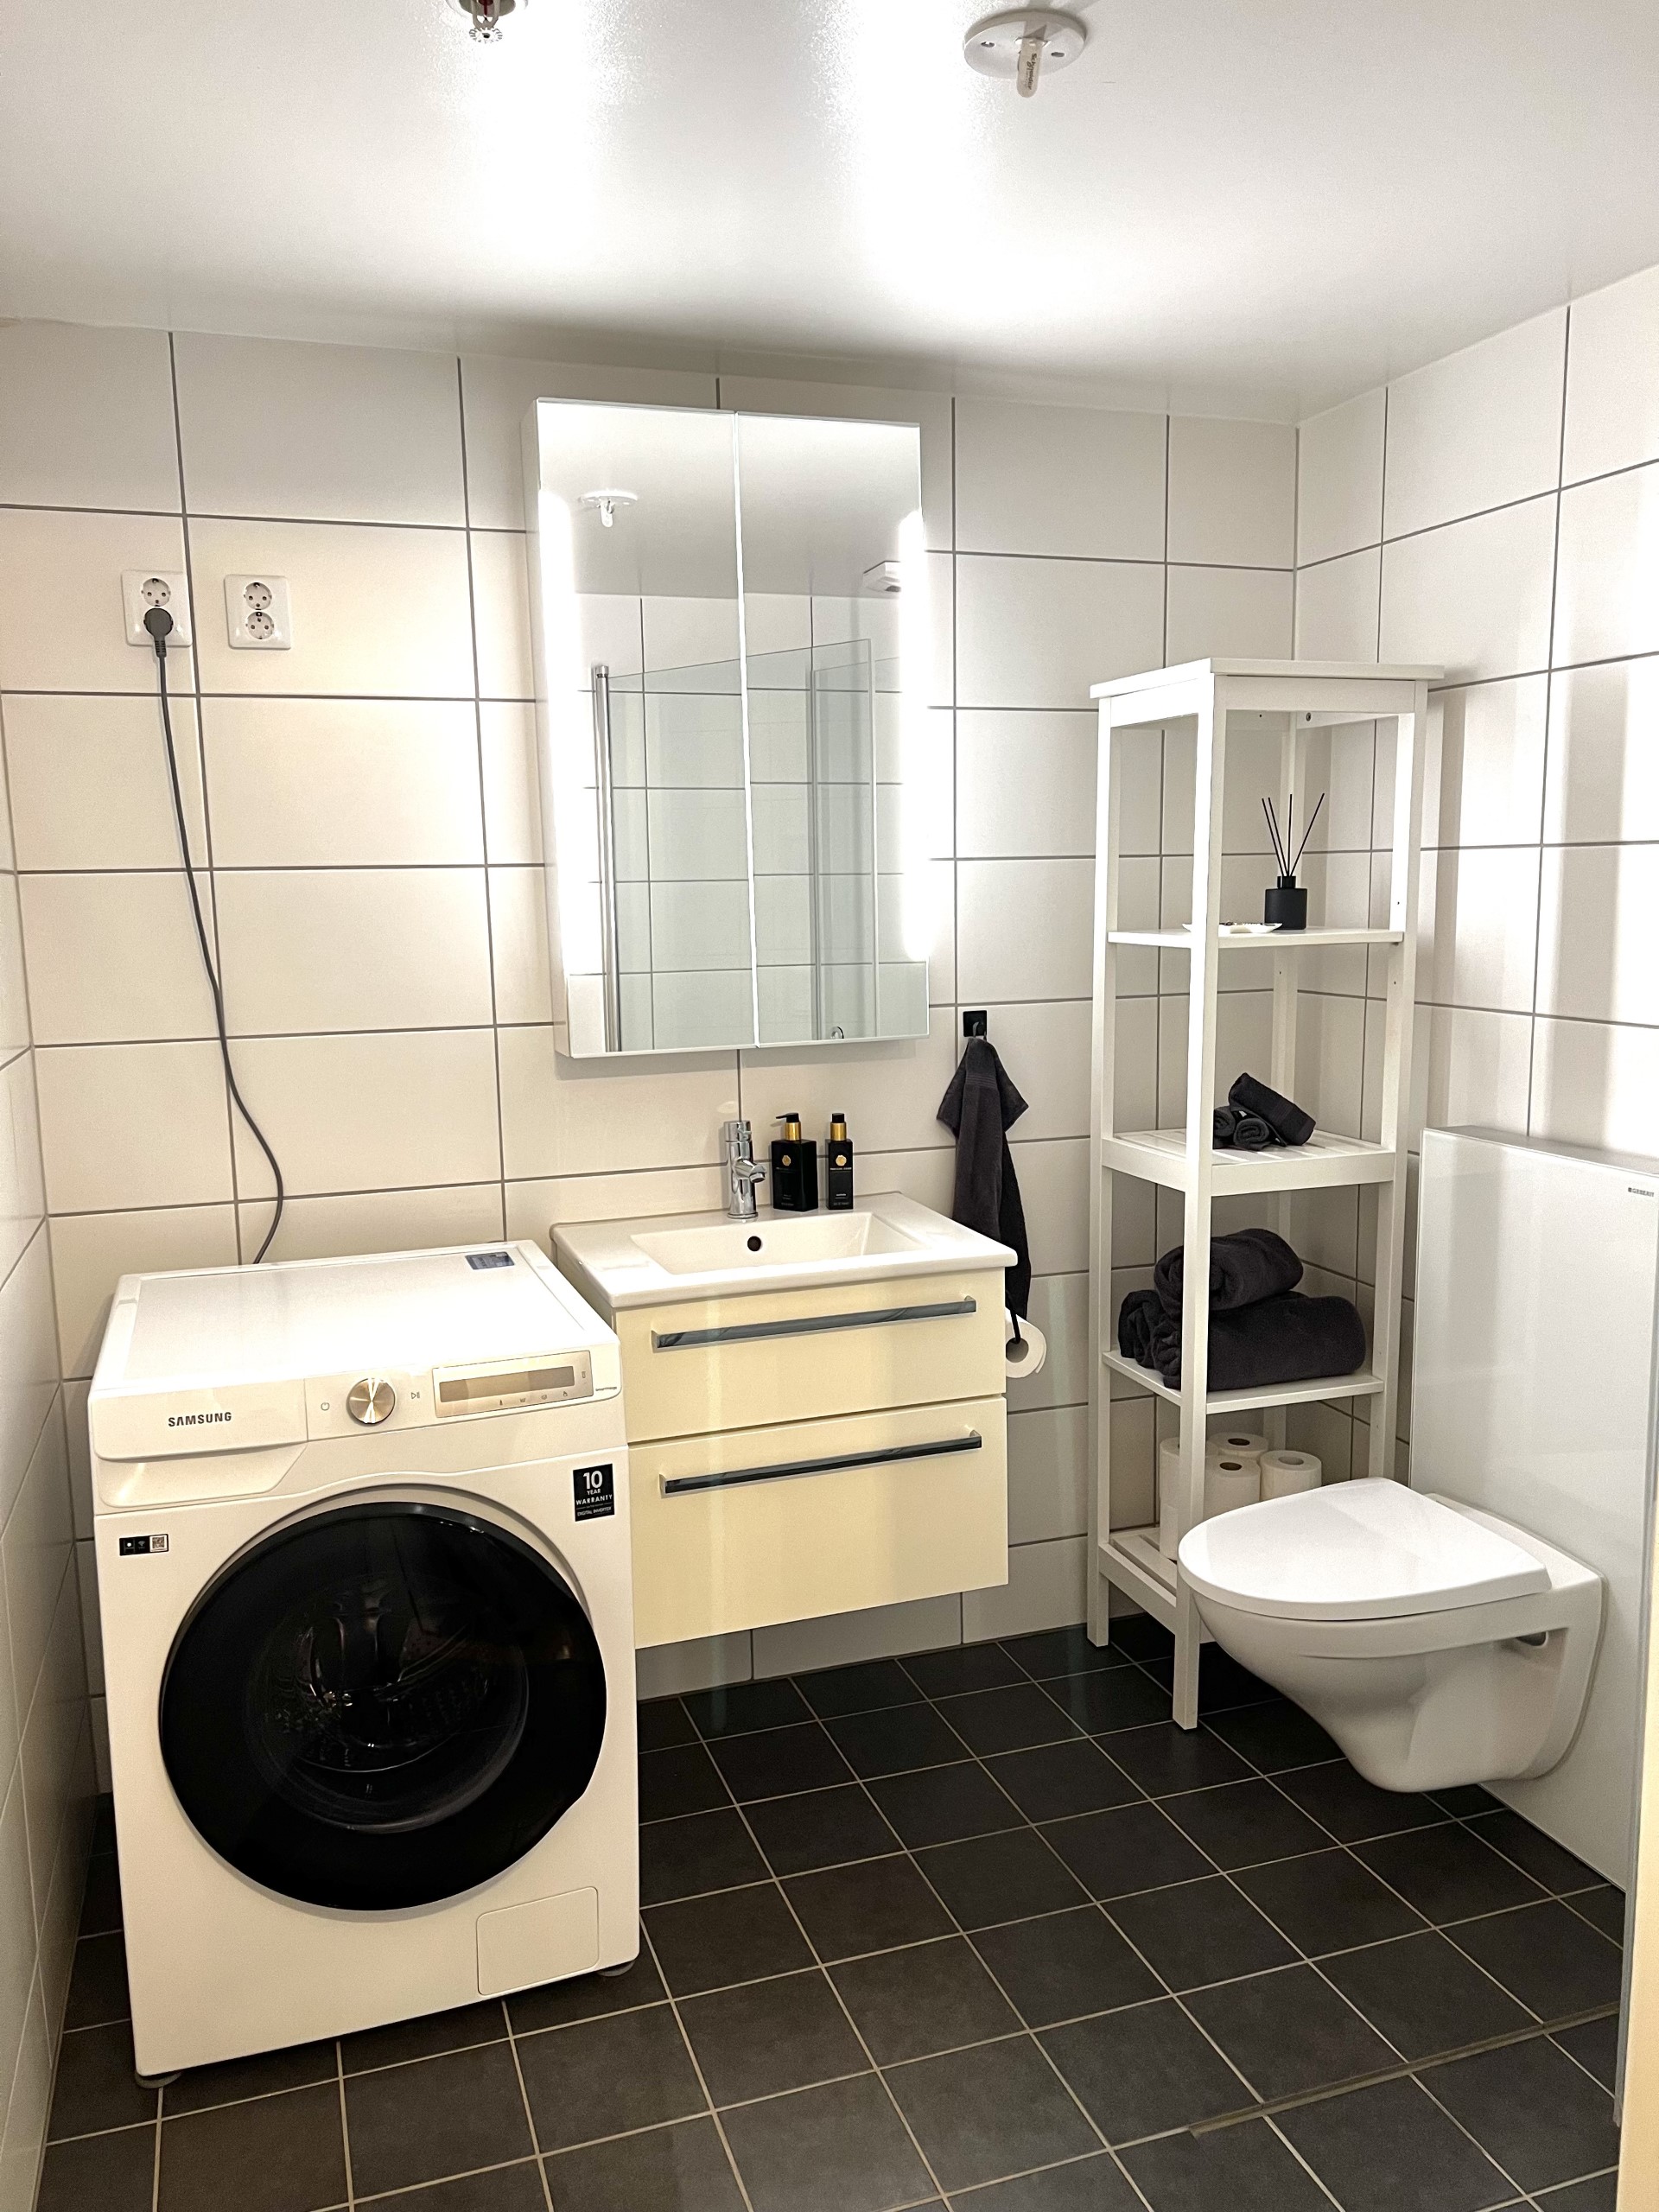 Bad med vegghengt toalett, servant med skuffer og hyller i speilskap. Kombinert vaskemaskin og tørketrommel som er inkludert i husleien. 